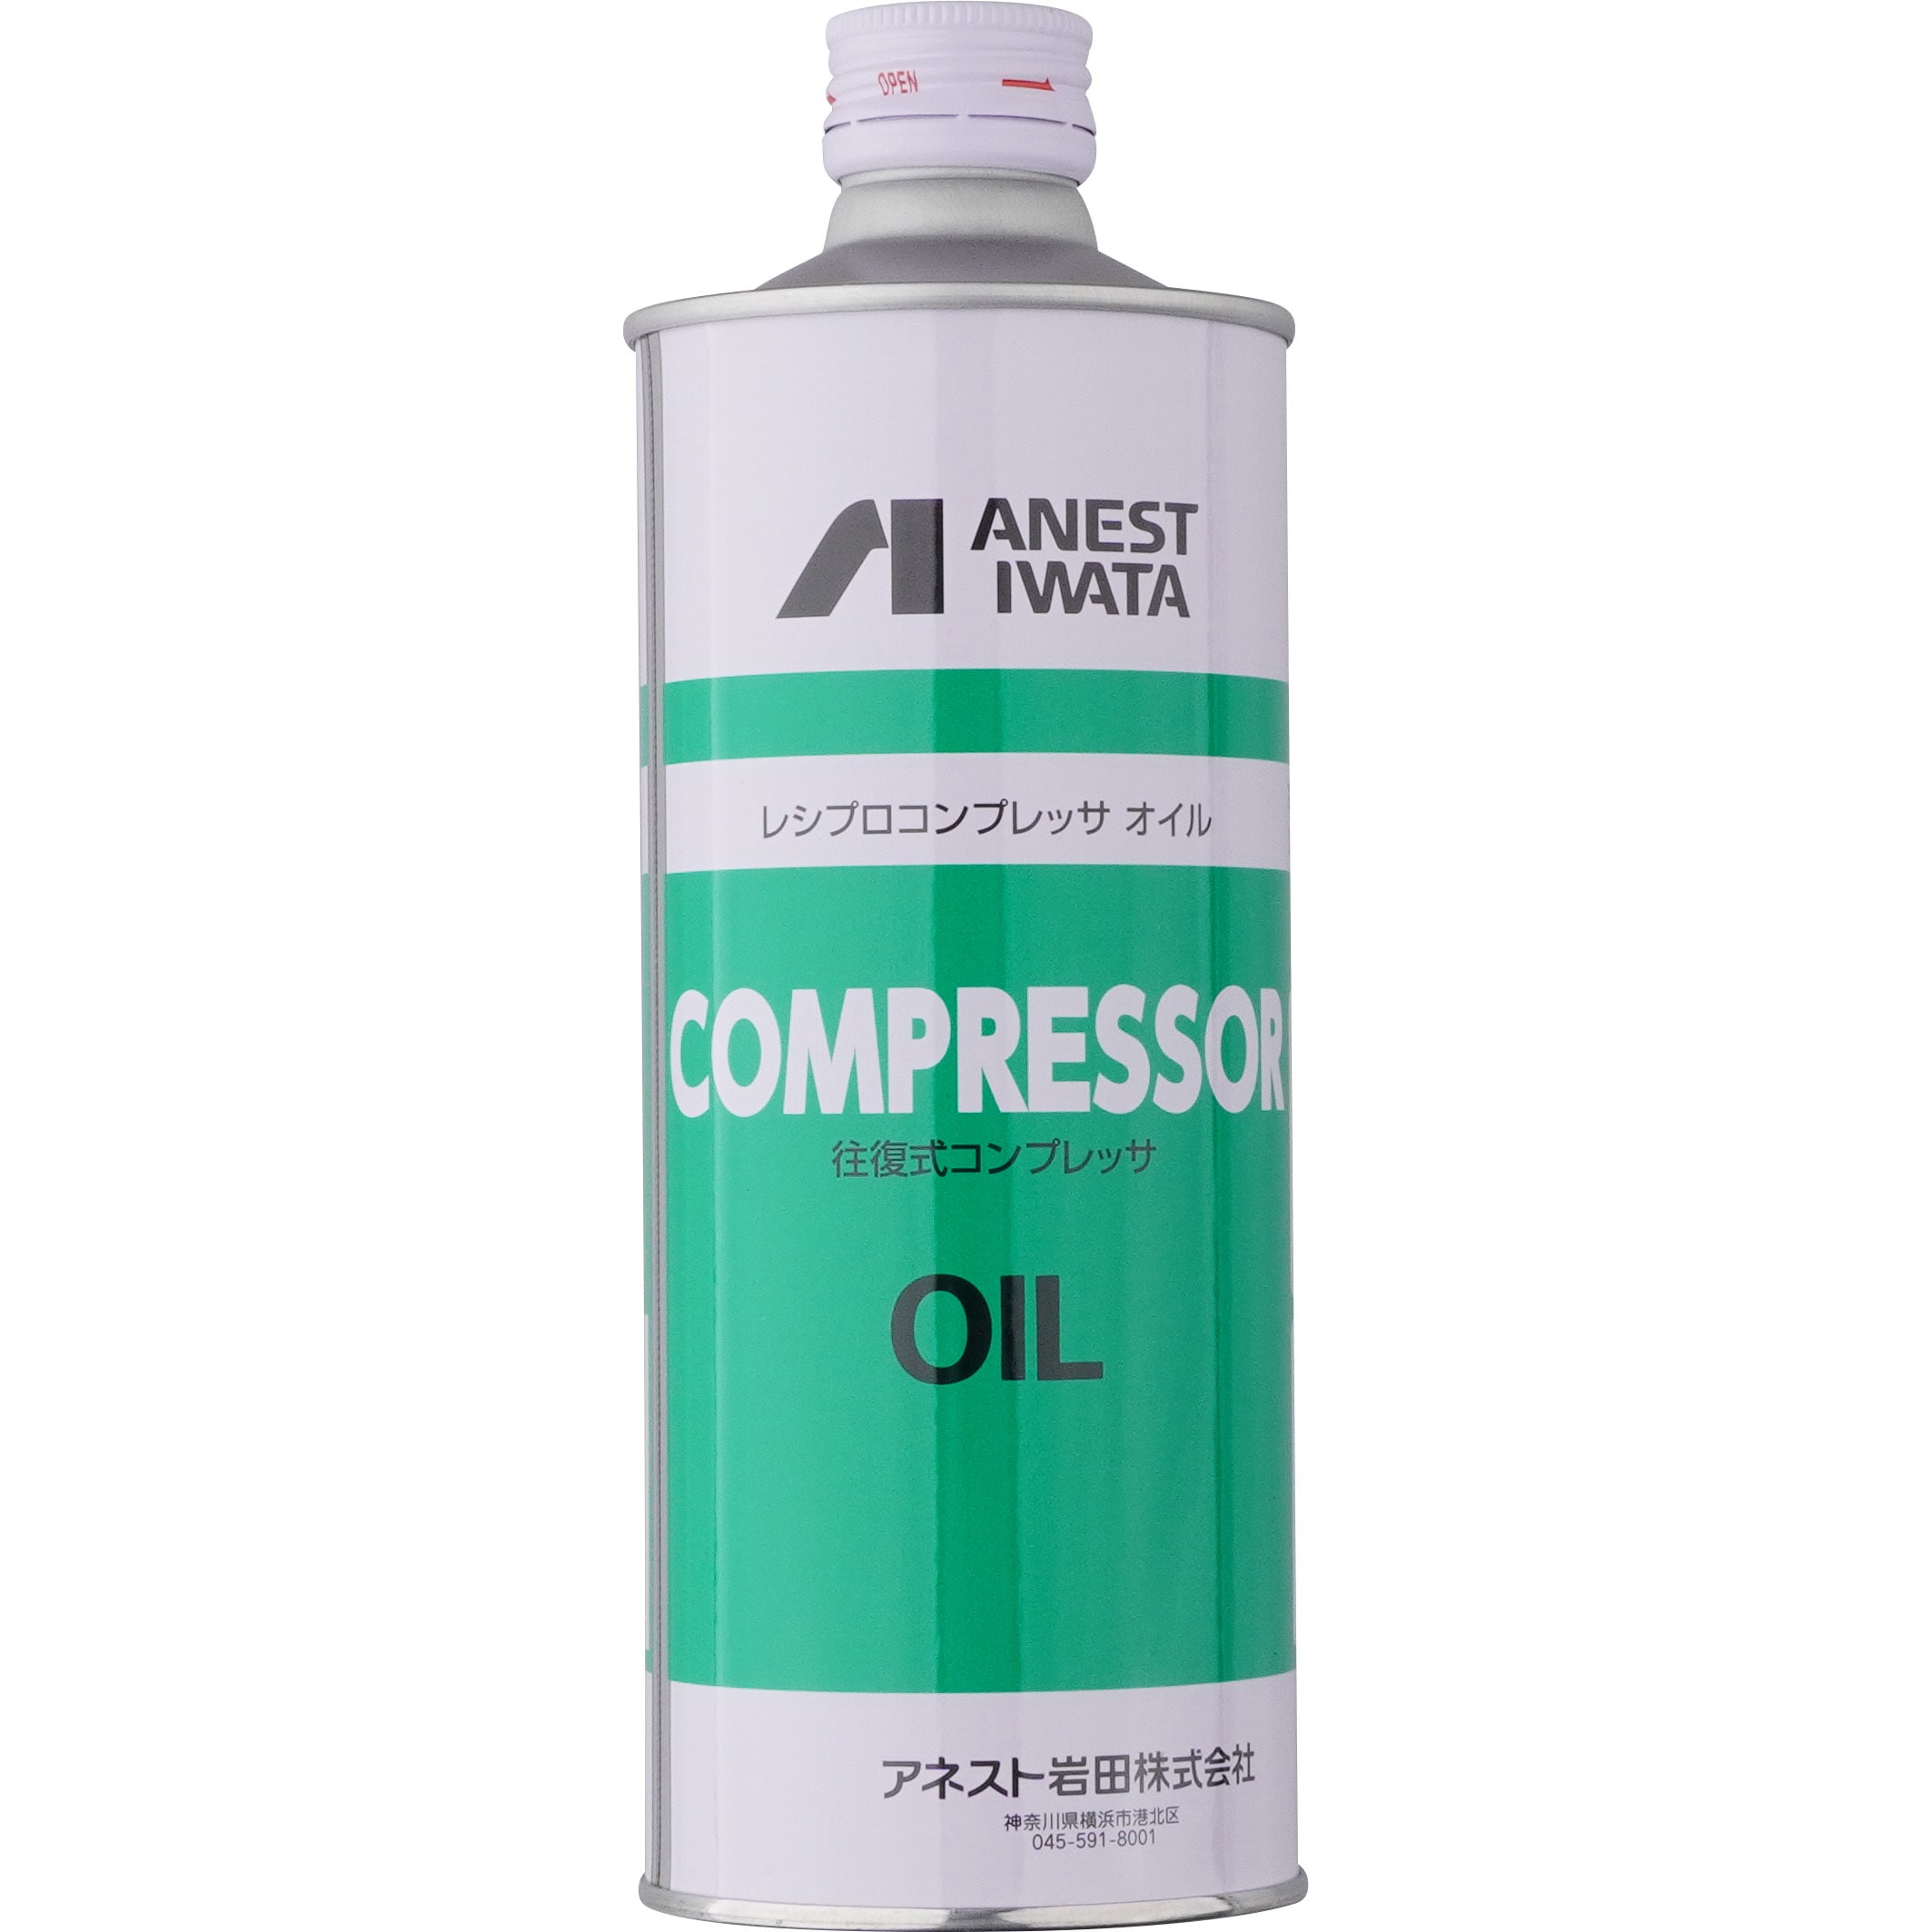 COMG レシプロ コンプレッサーオイル 1缶0.5L アネスト岩田